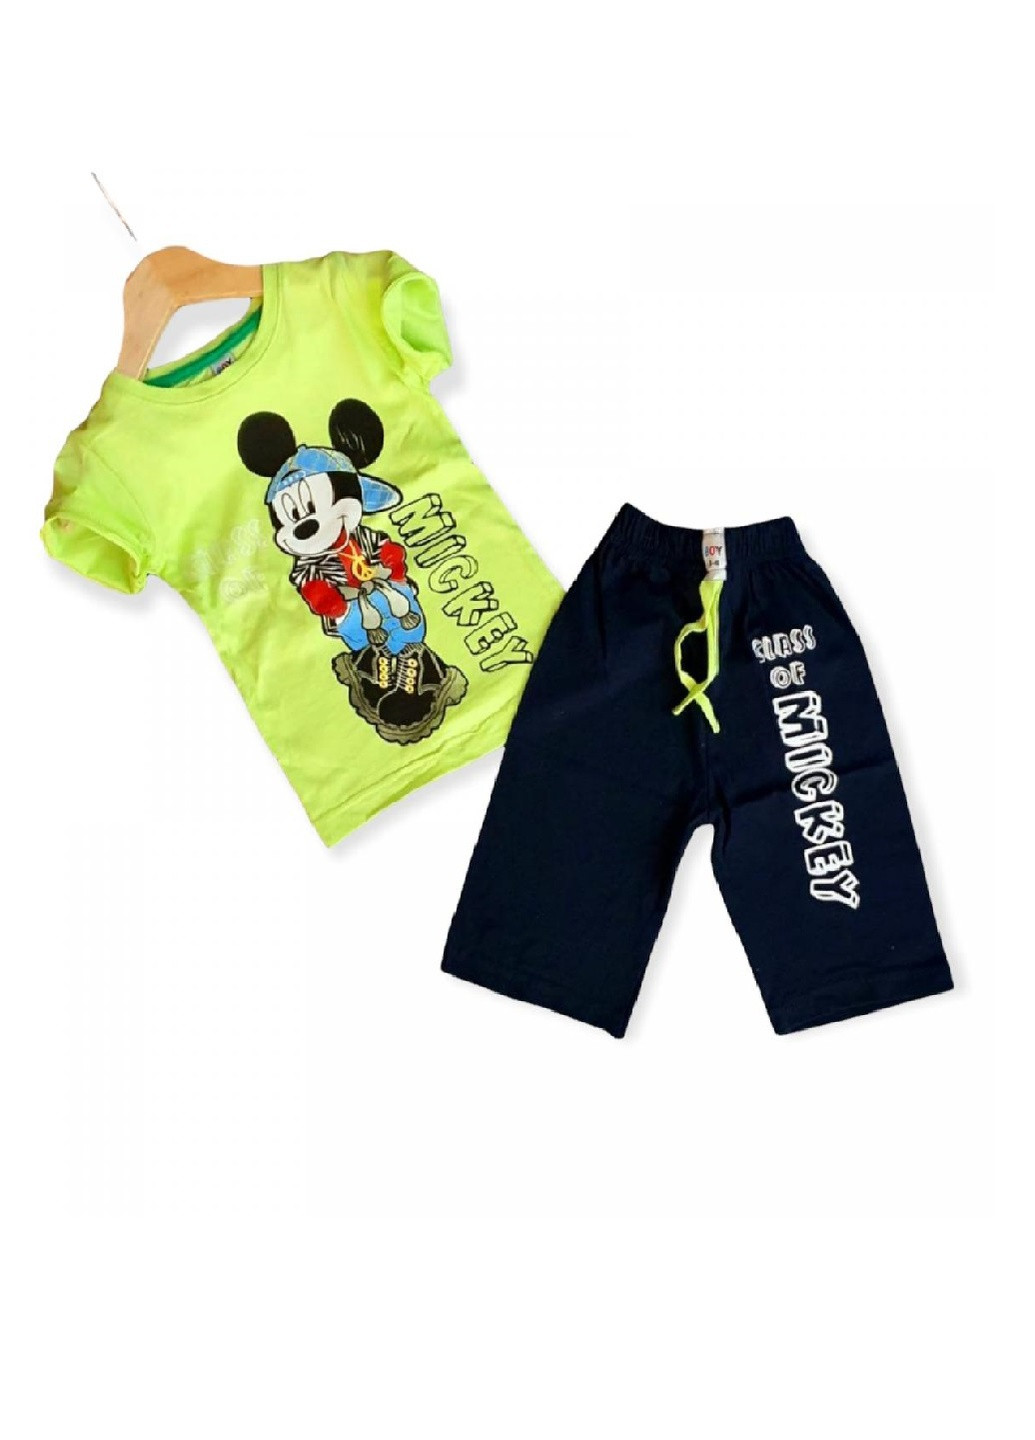 Лаймовый комплект (футболка, шорты) Disney